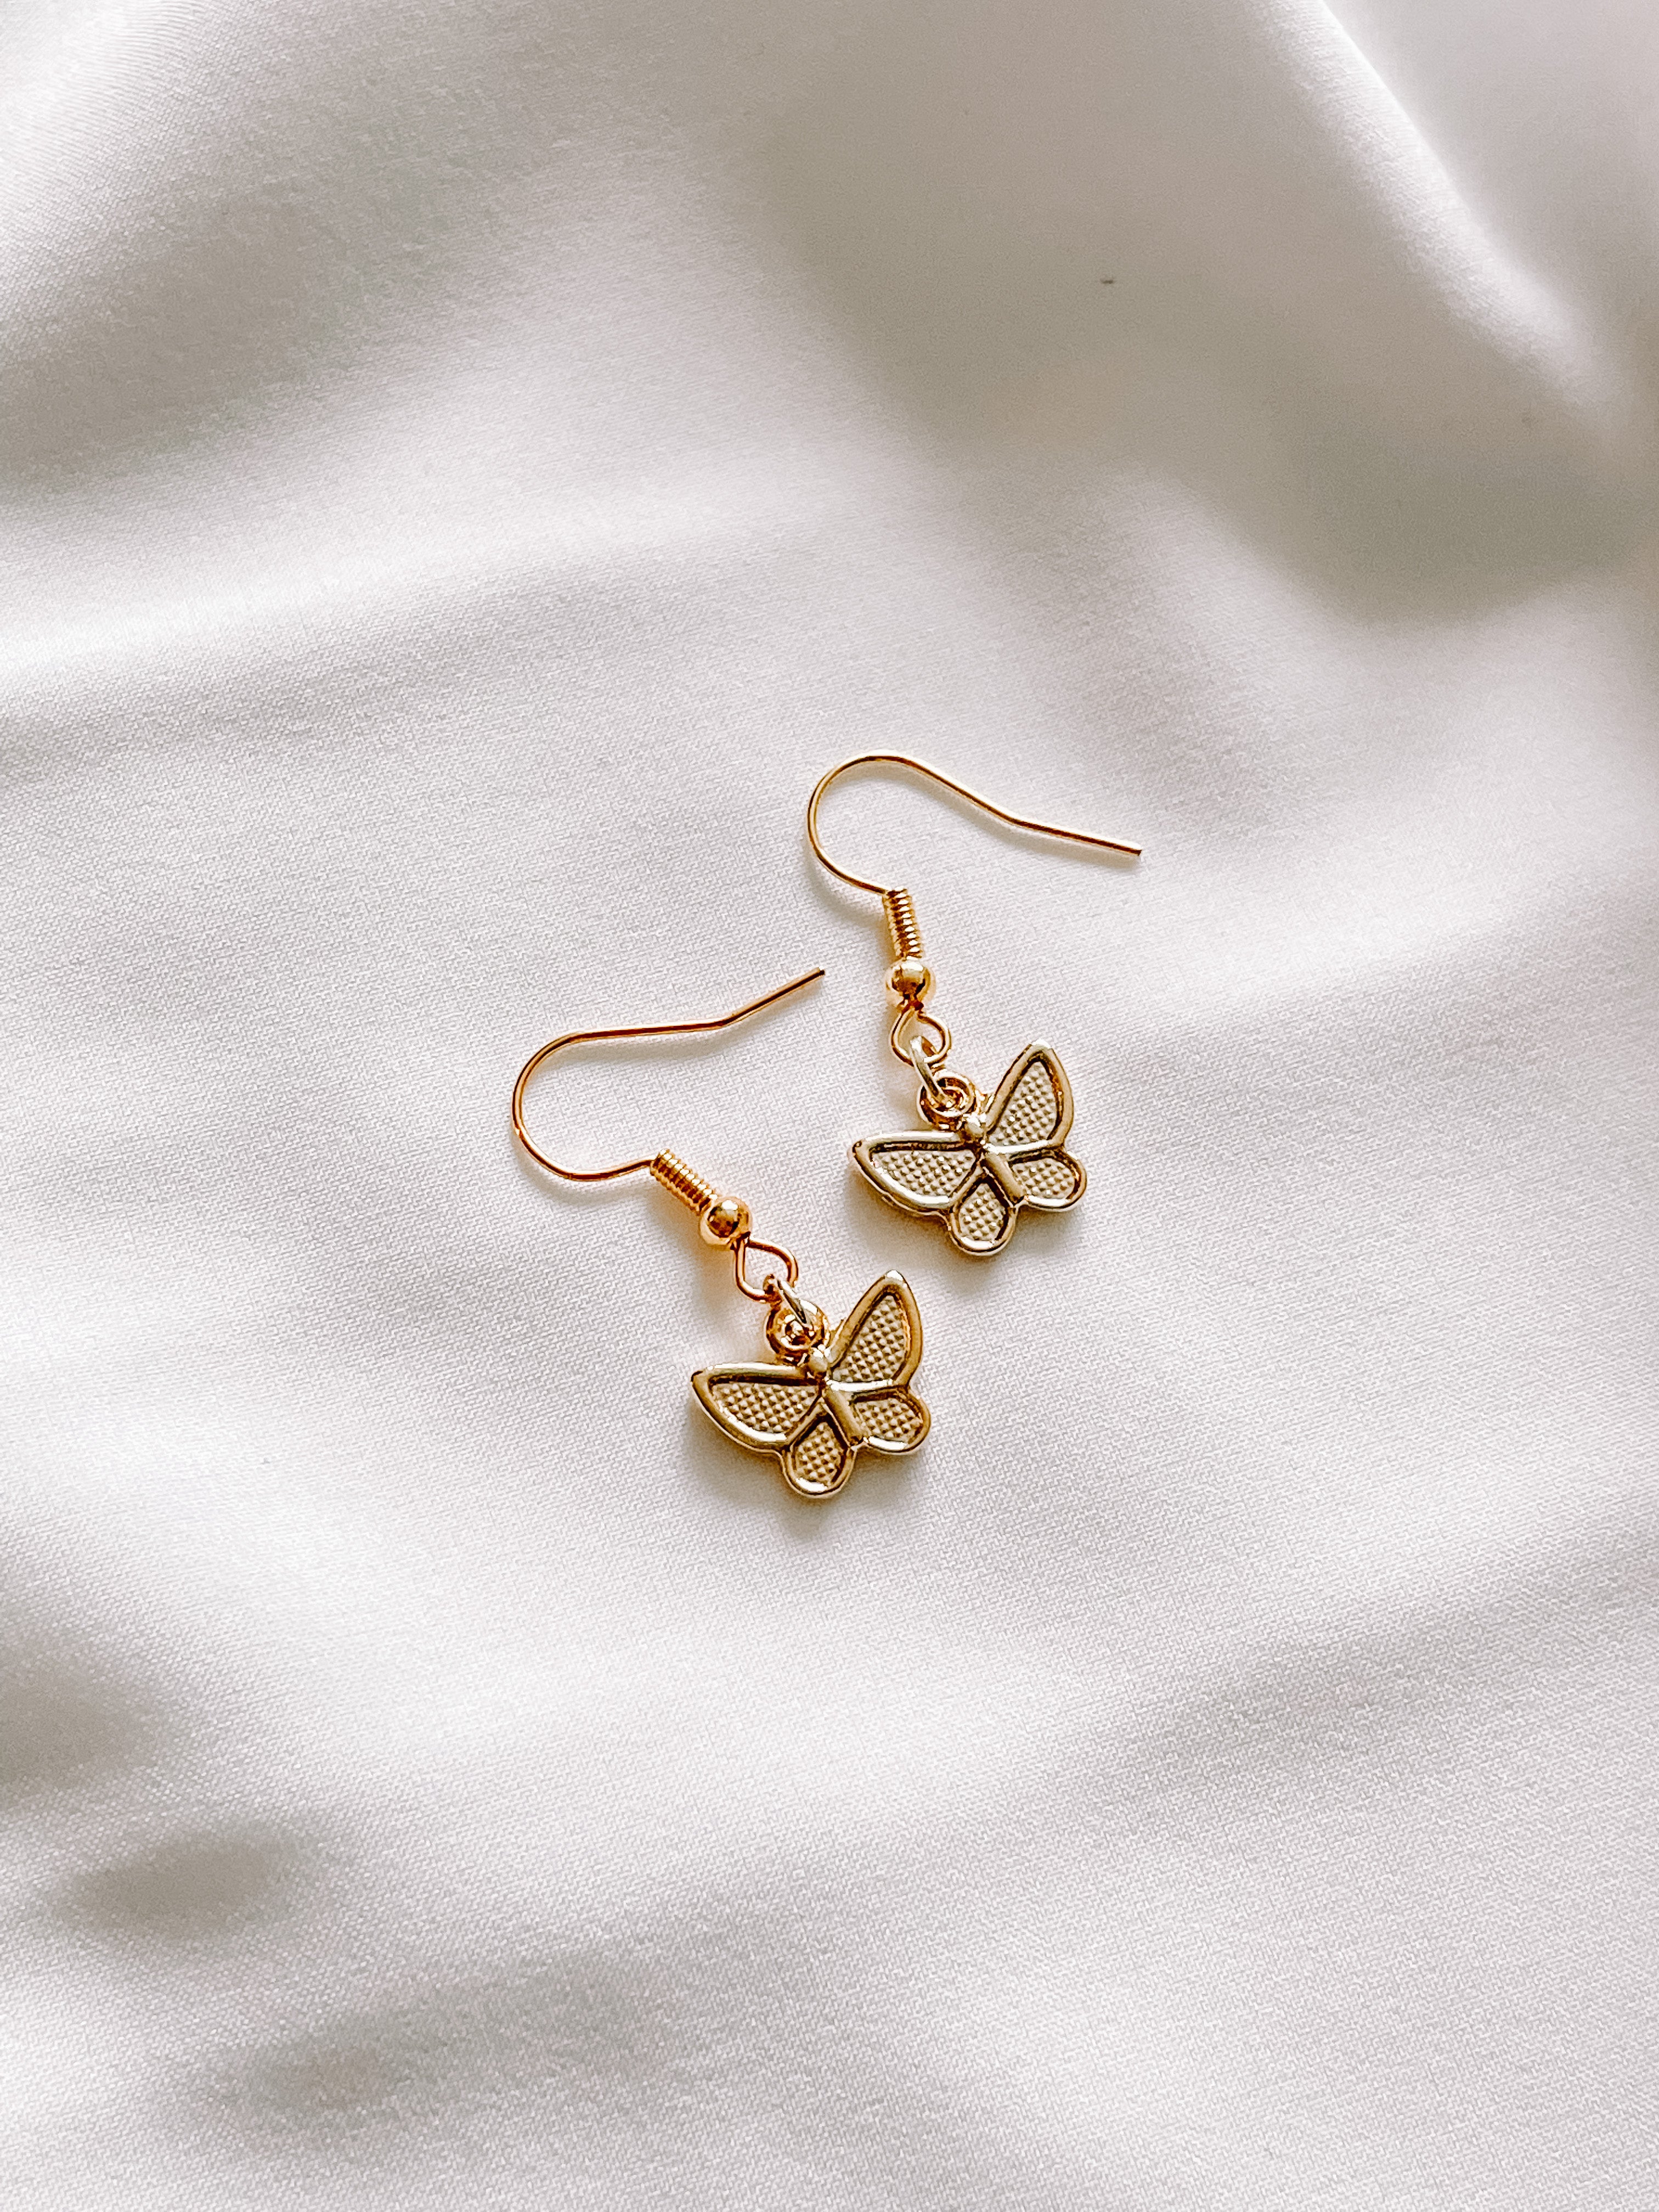 Dainty Gold Butterfly Stud Earrings, Small Butterfly Earrings, Gift for  Little Girl, Toddler Girl Gift, Birthday Gift Girl, Gold Filled - Etsy